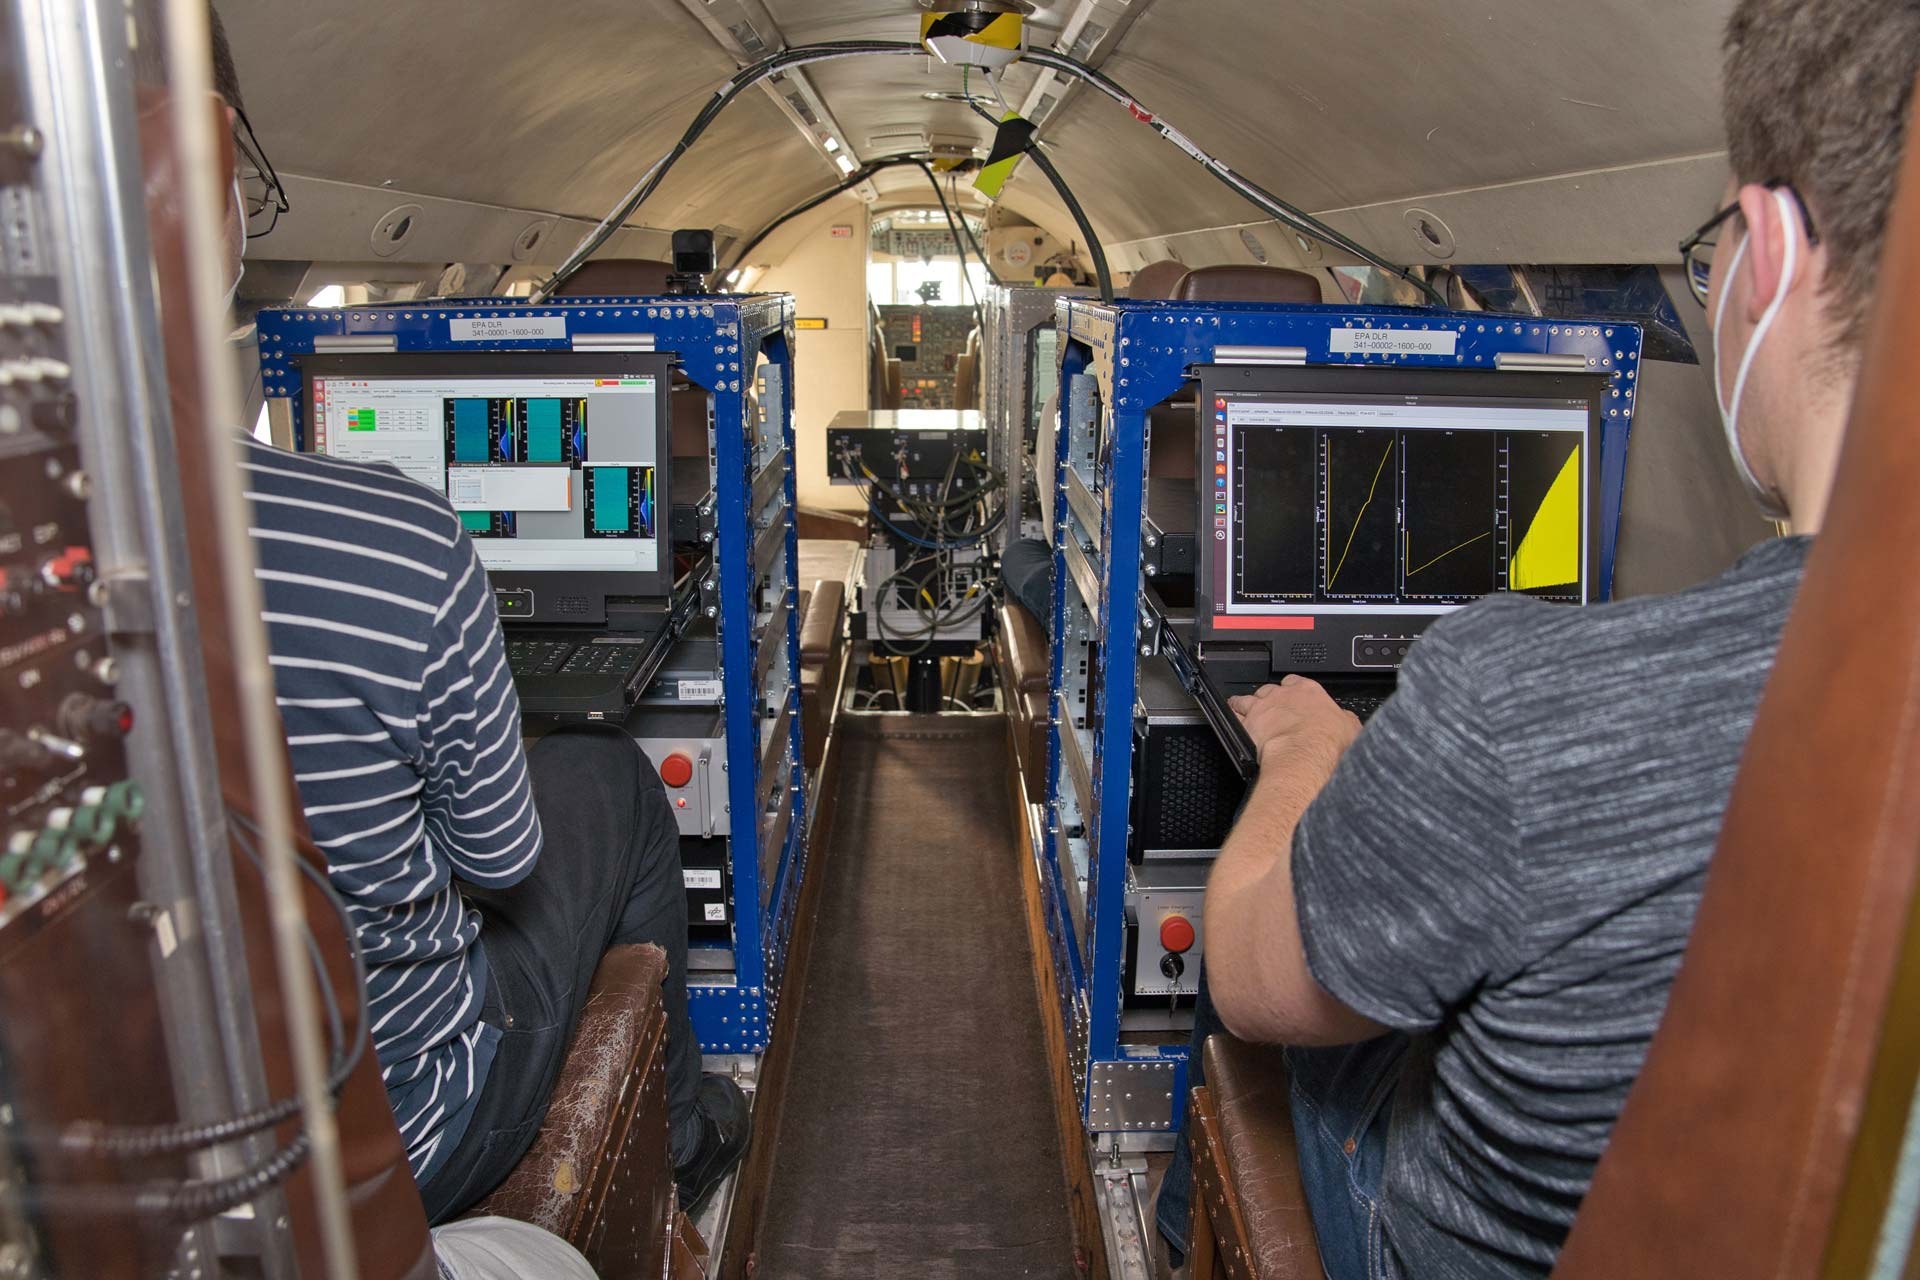 DLR-Wissenschaftler überwachen Systeme und Messdaten an Bord der Falcon